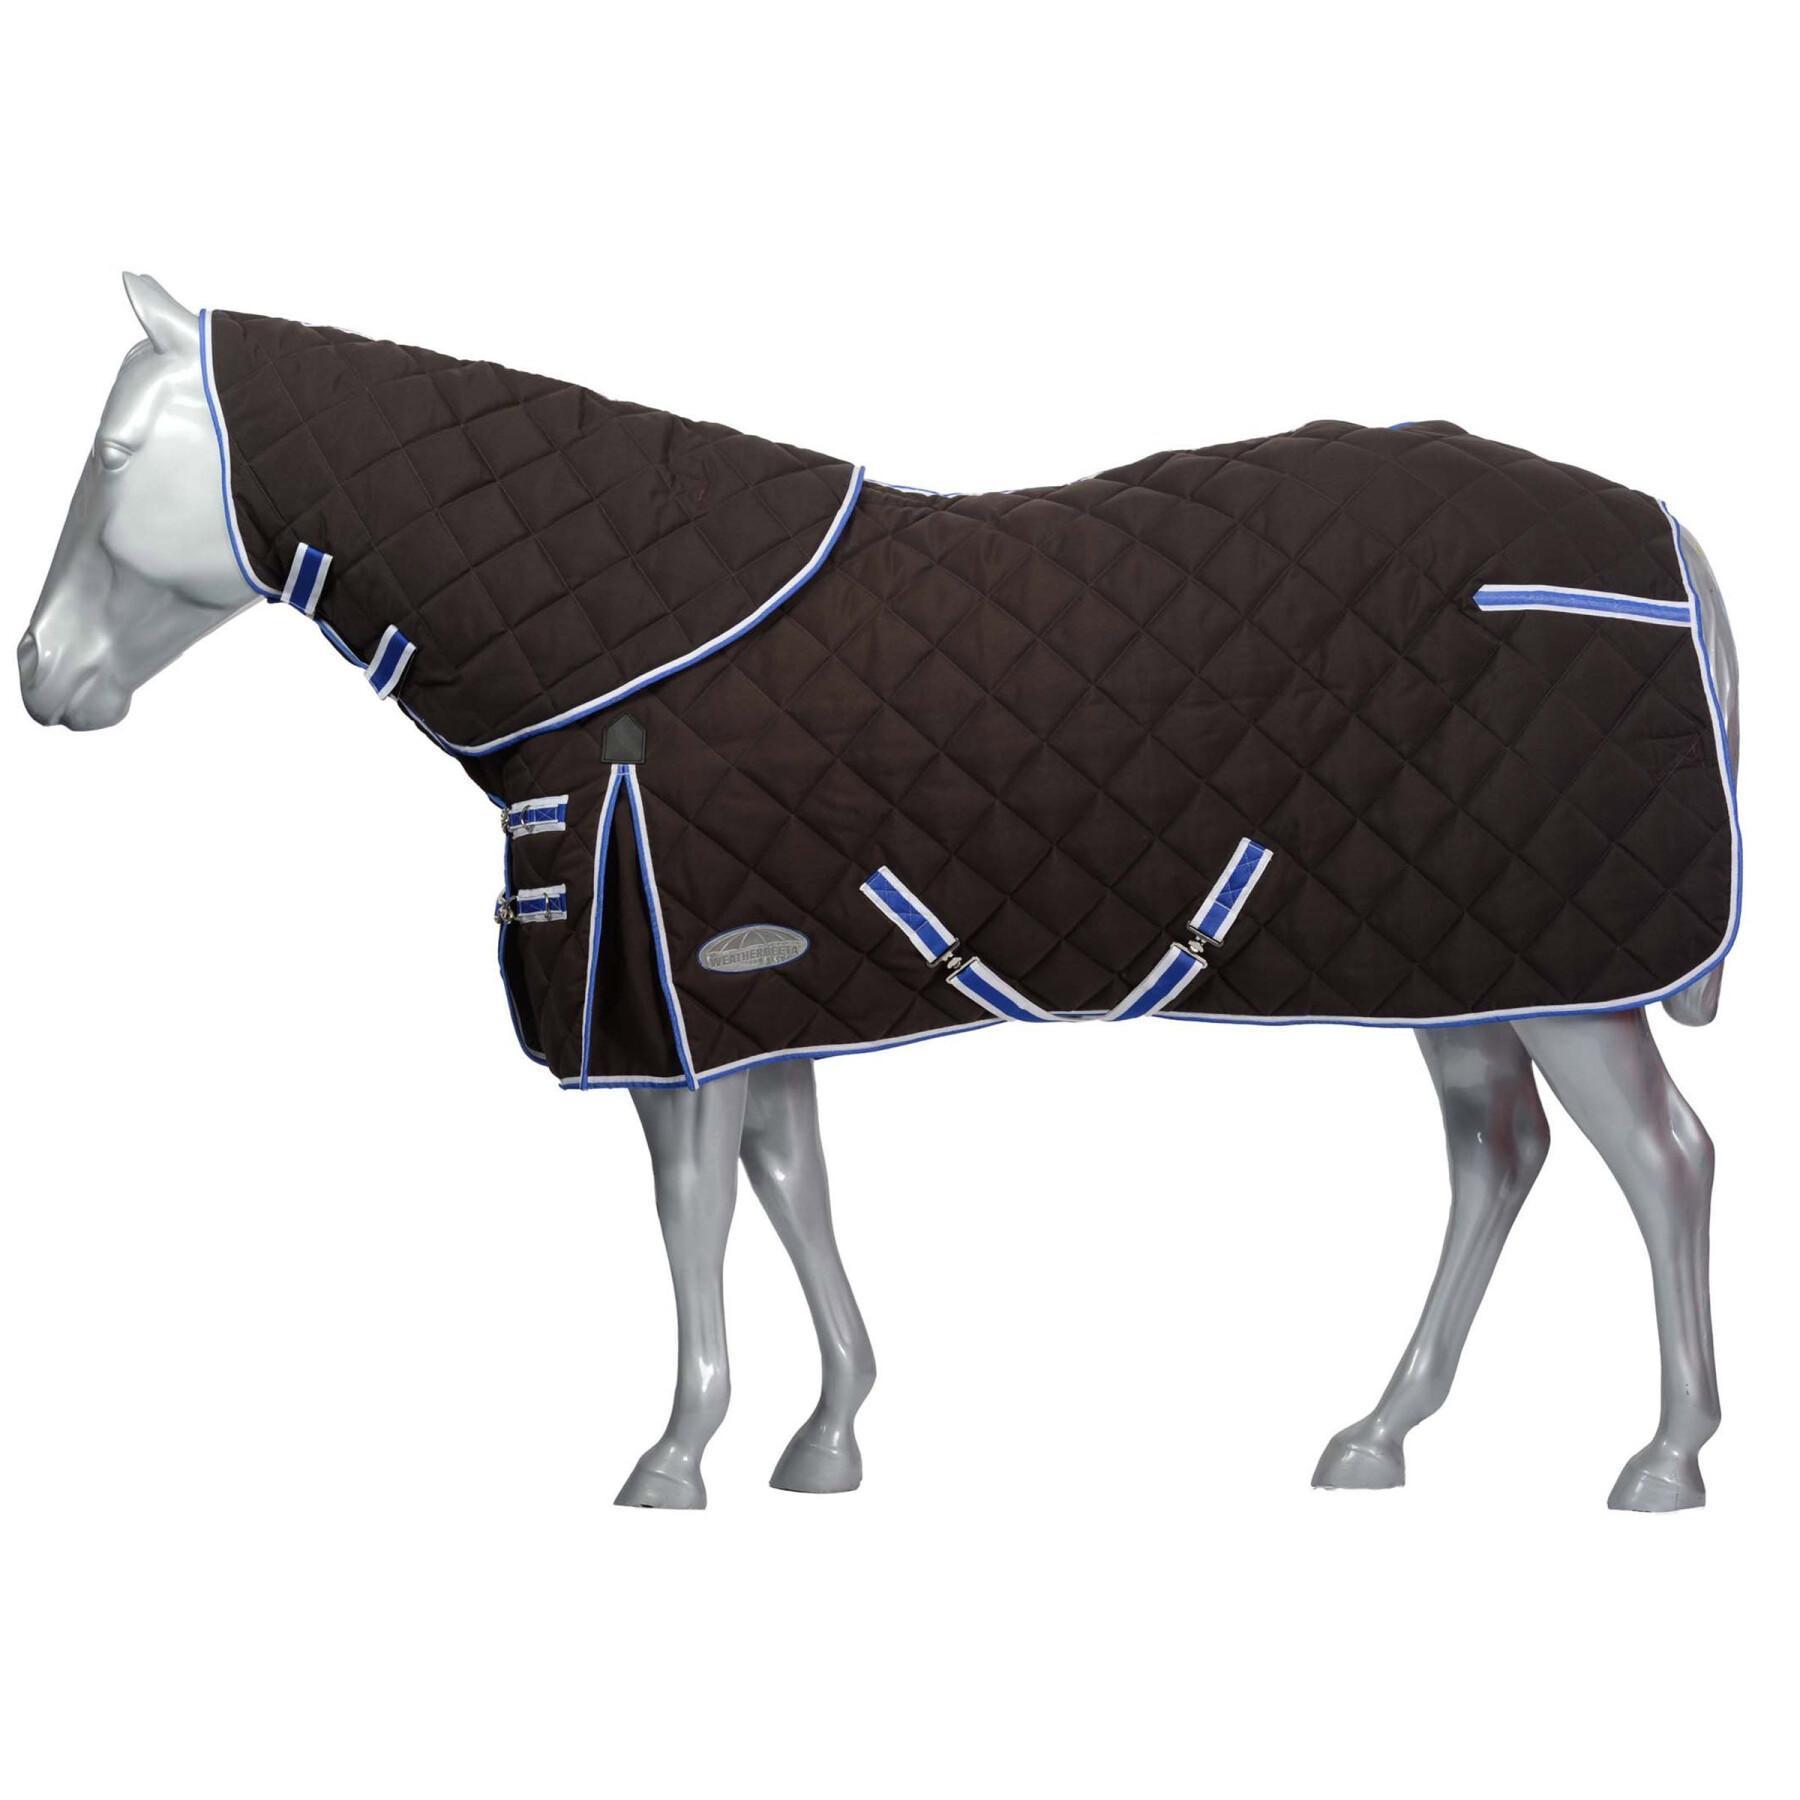 Tappeto da scuderia per cavalli con copricollo staccabile Weatherbeeta Comfitec 1000D Diamond Quilt 350g